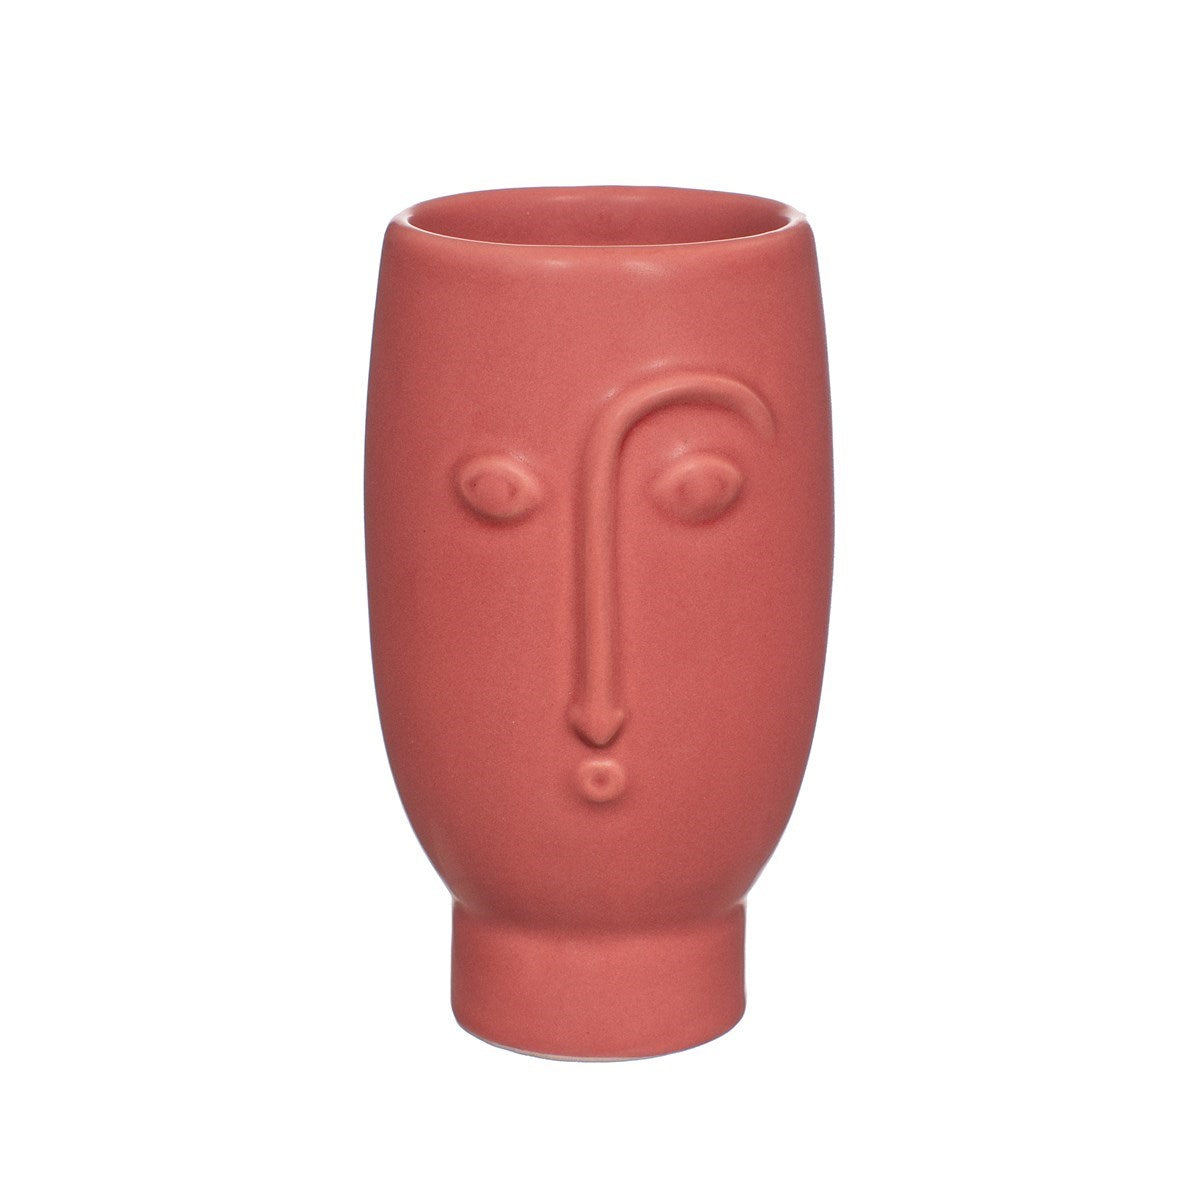 Mini Face Vase, Brick